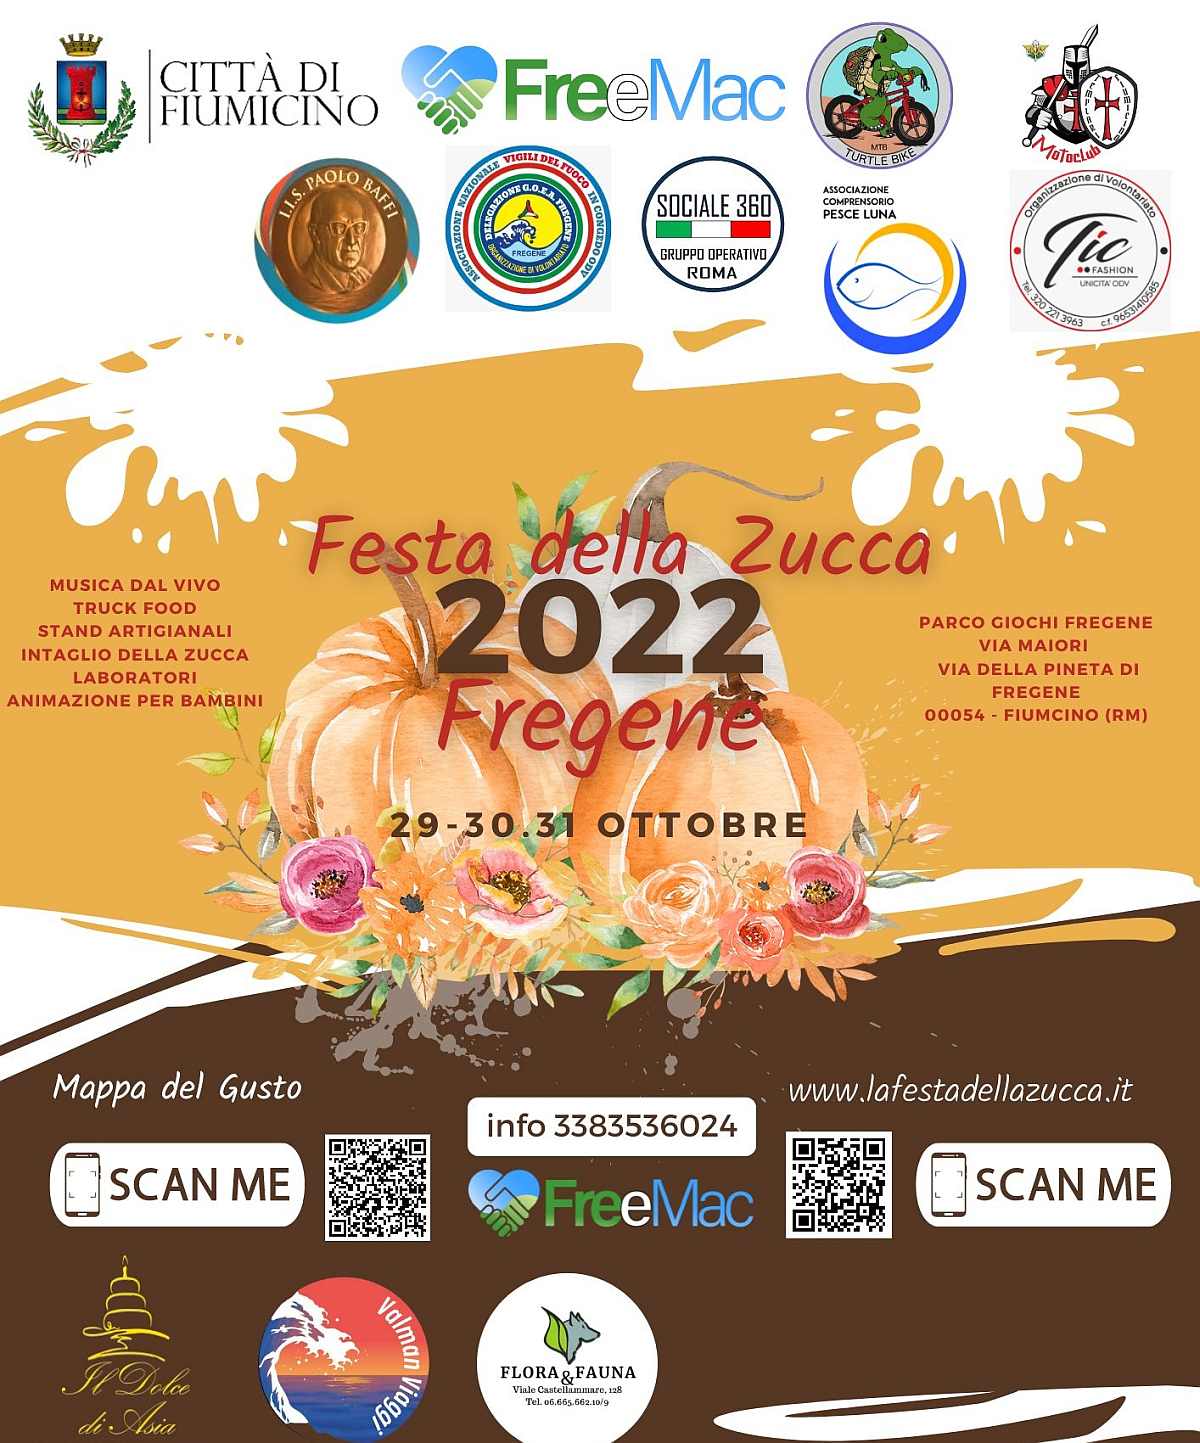 Fregene (RM)
"Festa della Zucca"
29-30-31 Ottobre 2022 
